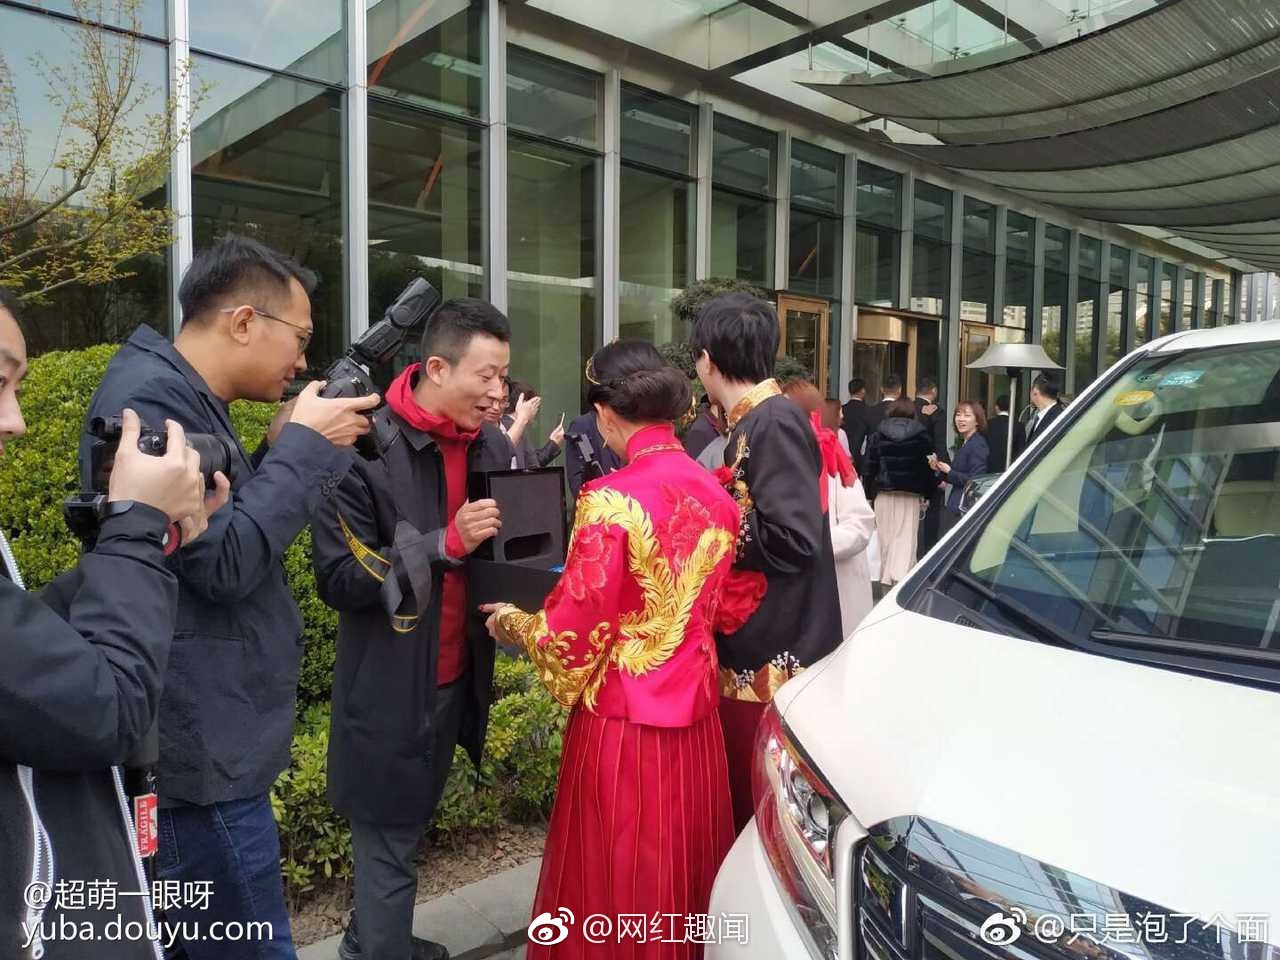 Đám cưới hot nhất hôm nay: Thiếu gia giàu nhất Trung Quốc làm phù rể, tặng nóng cô dâu chú rể 1 chiếc Rolls Royce - Ảnh 7.